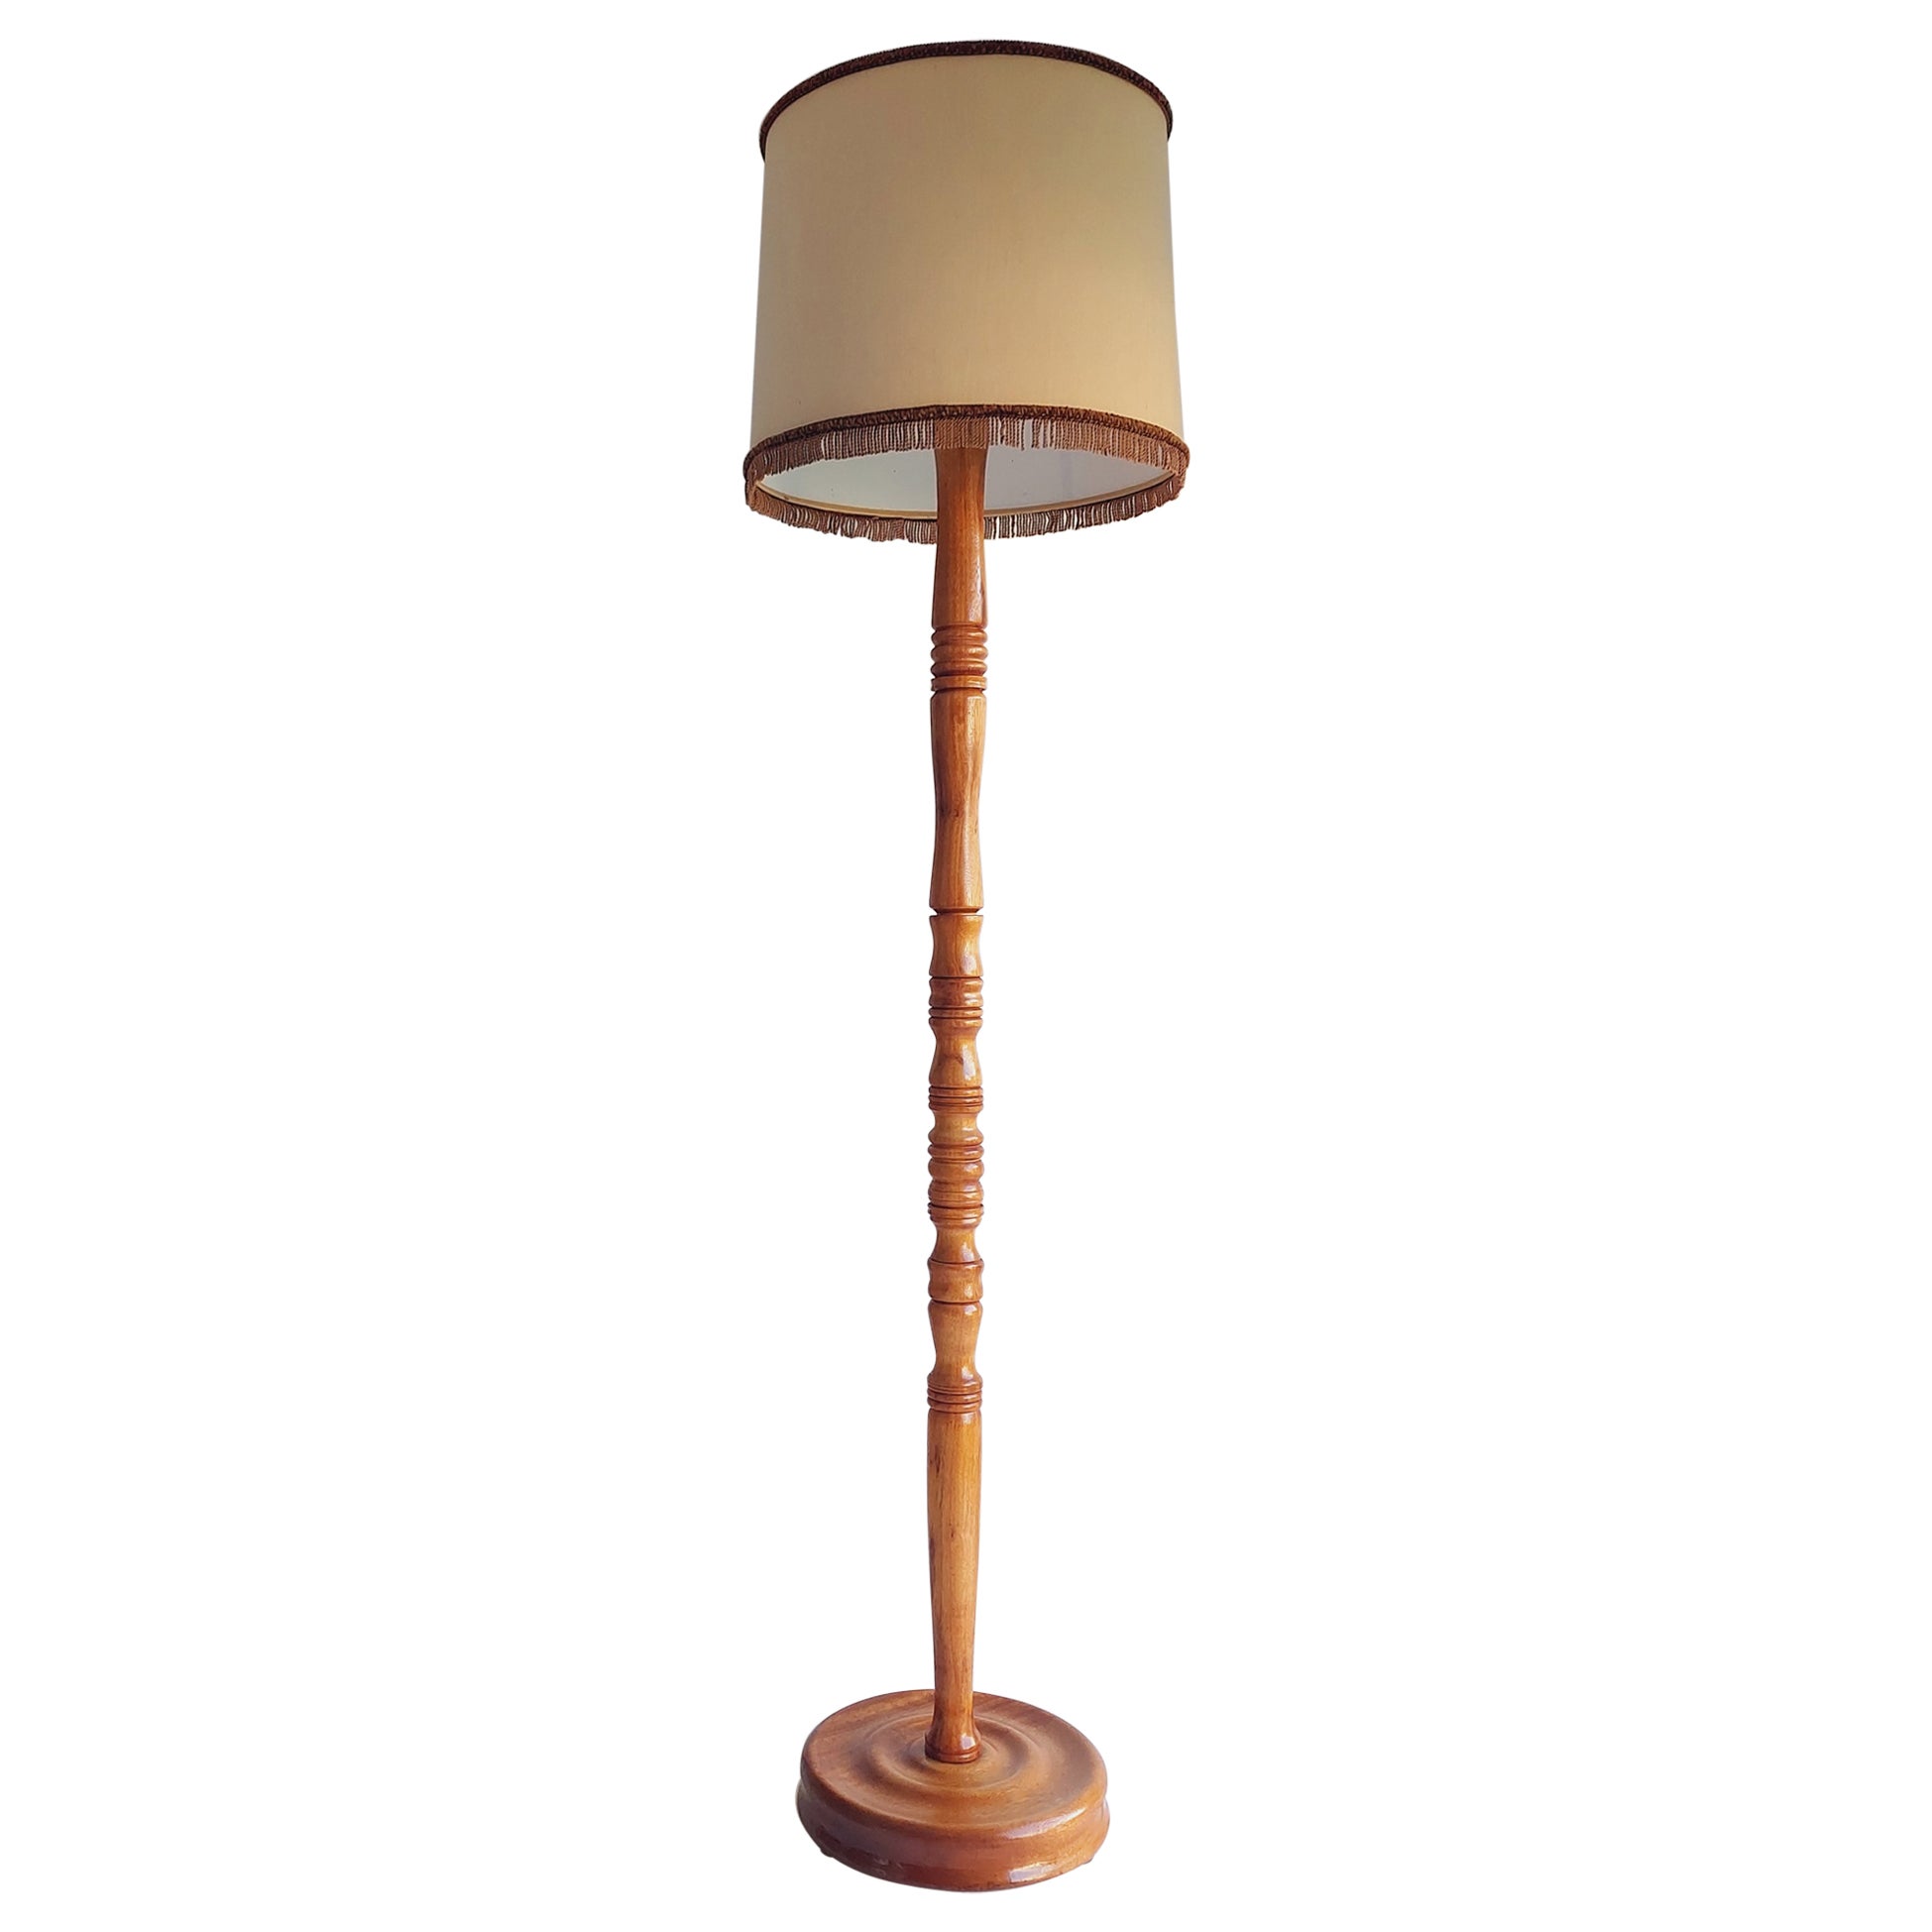 Antique lampadaire standard tourné en chêne avec abat-jour, années 30